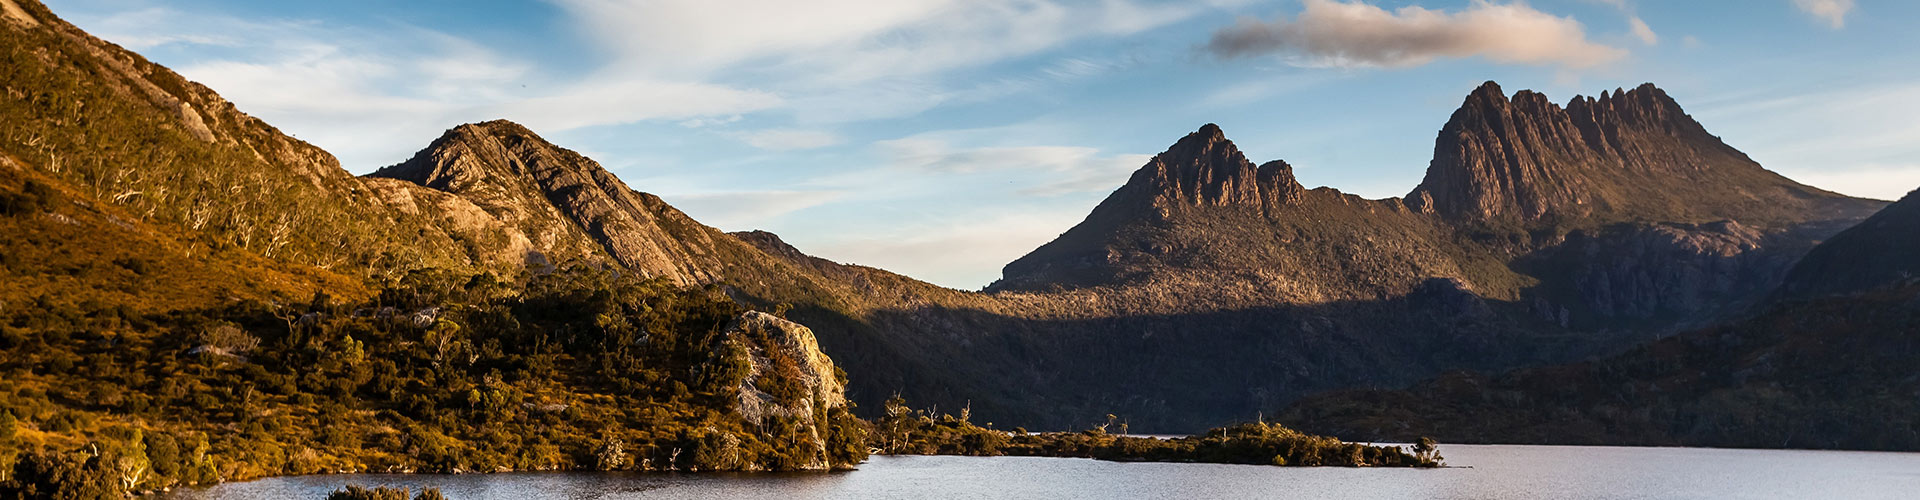 tourhub | Intrepid Travel | Tasmania's Tarkine & Cradle Mountain Explorer | PUKT